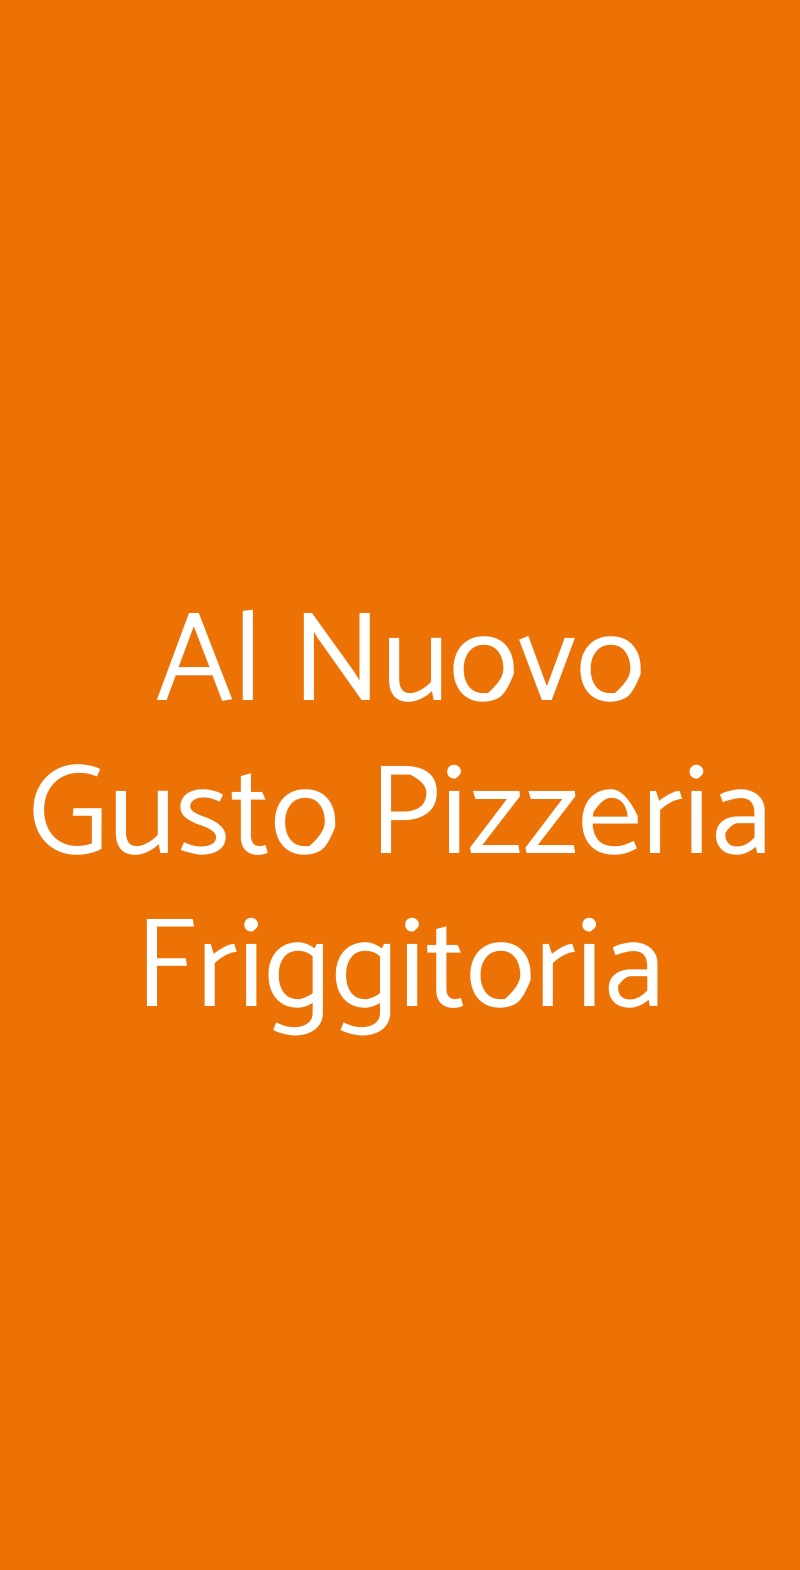 Al Nuovo Gusto Pizzeria Friggitoria Bari menù 1 pagina